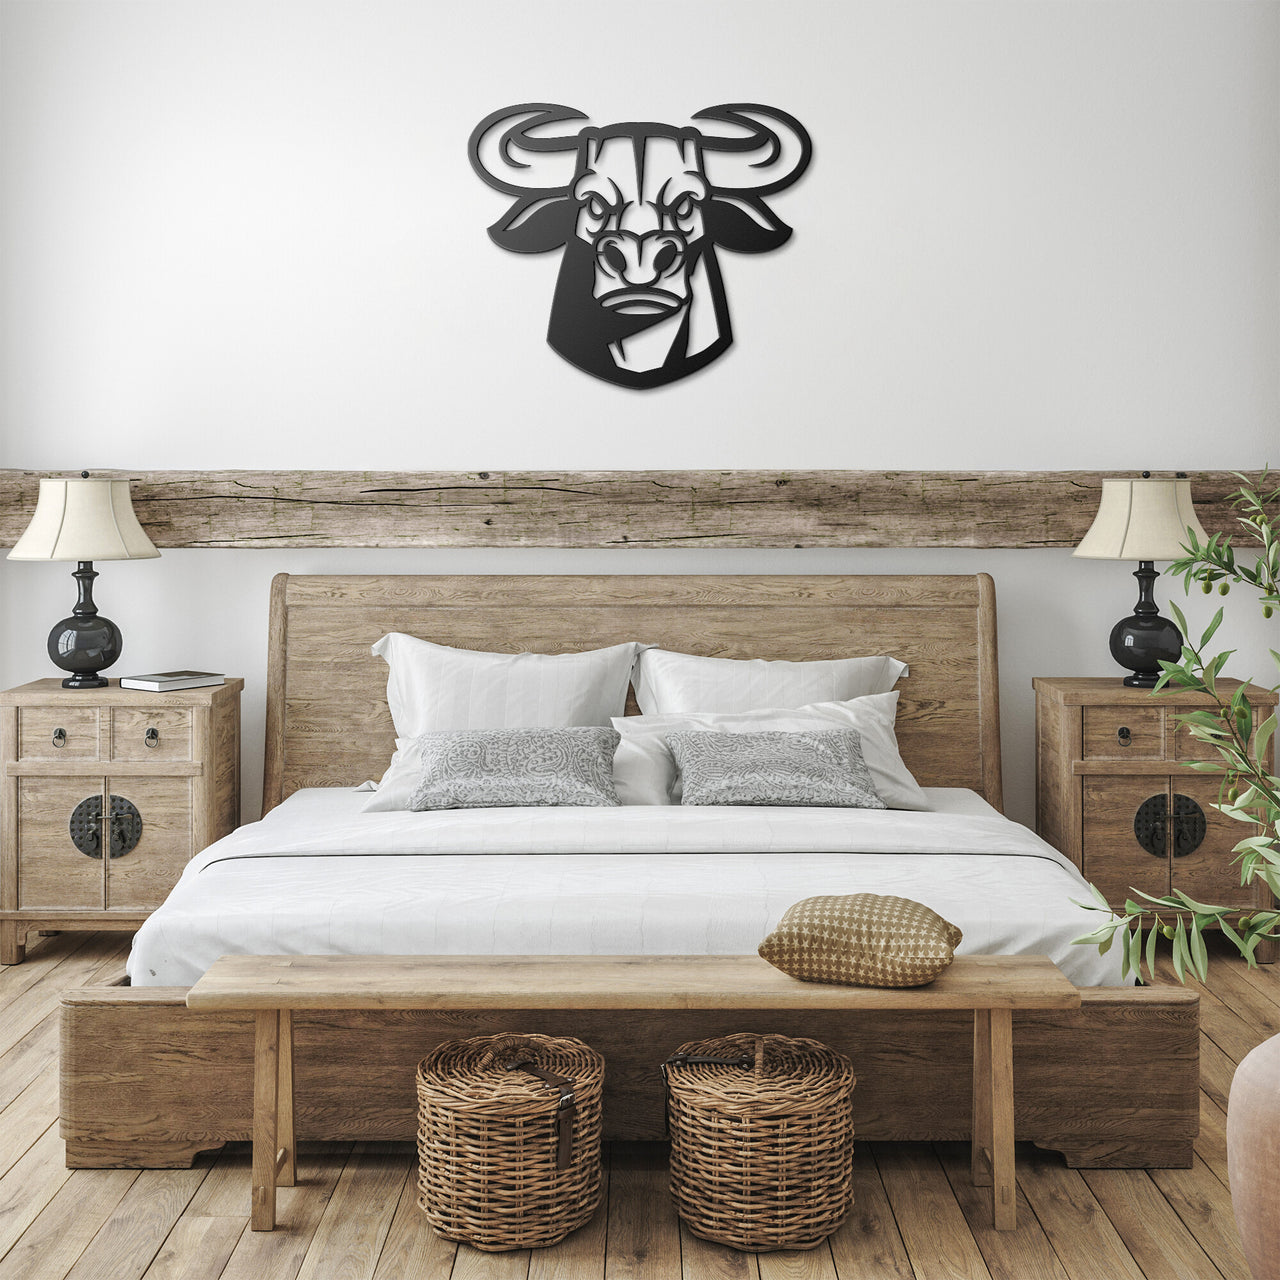 Bull Head_8226 Mascot Steel Wall Art